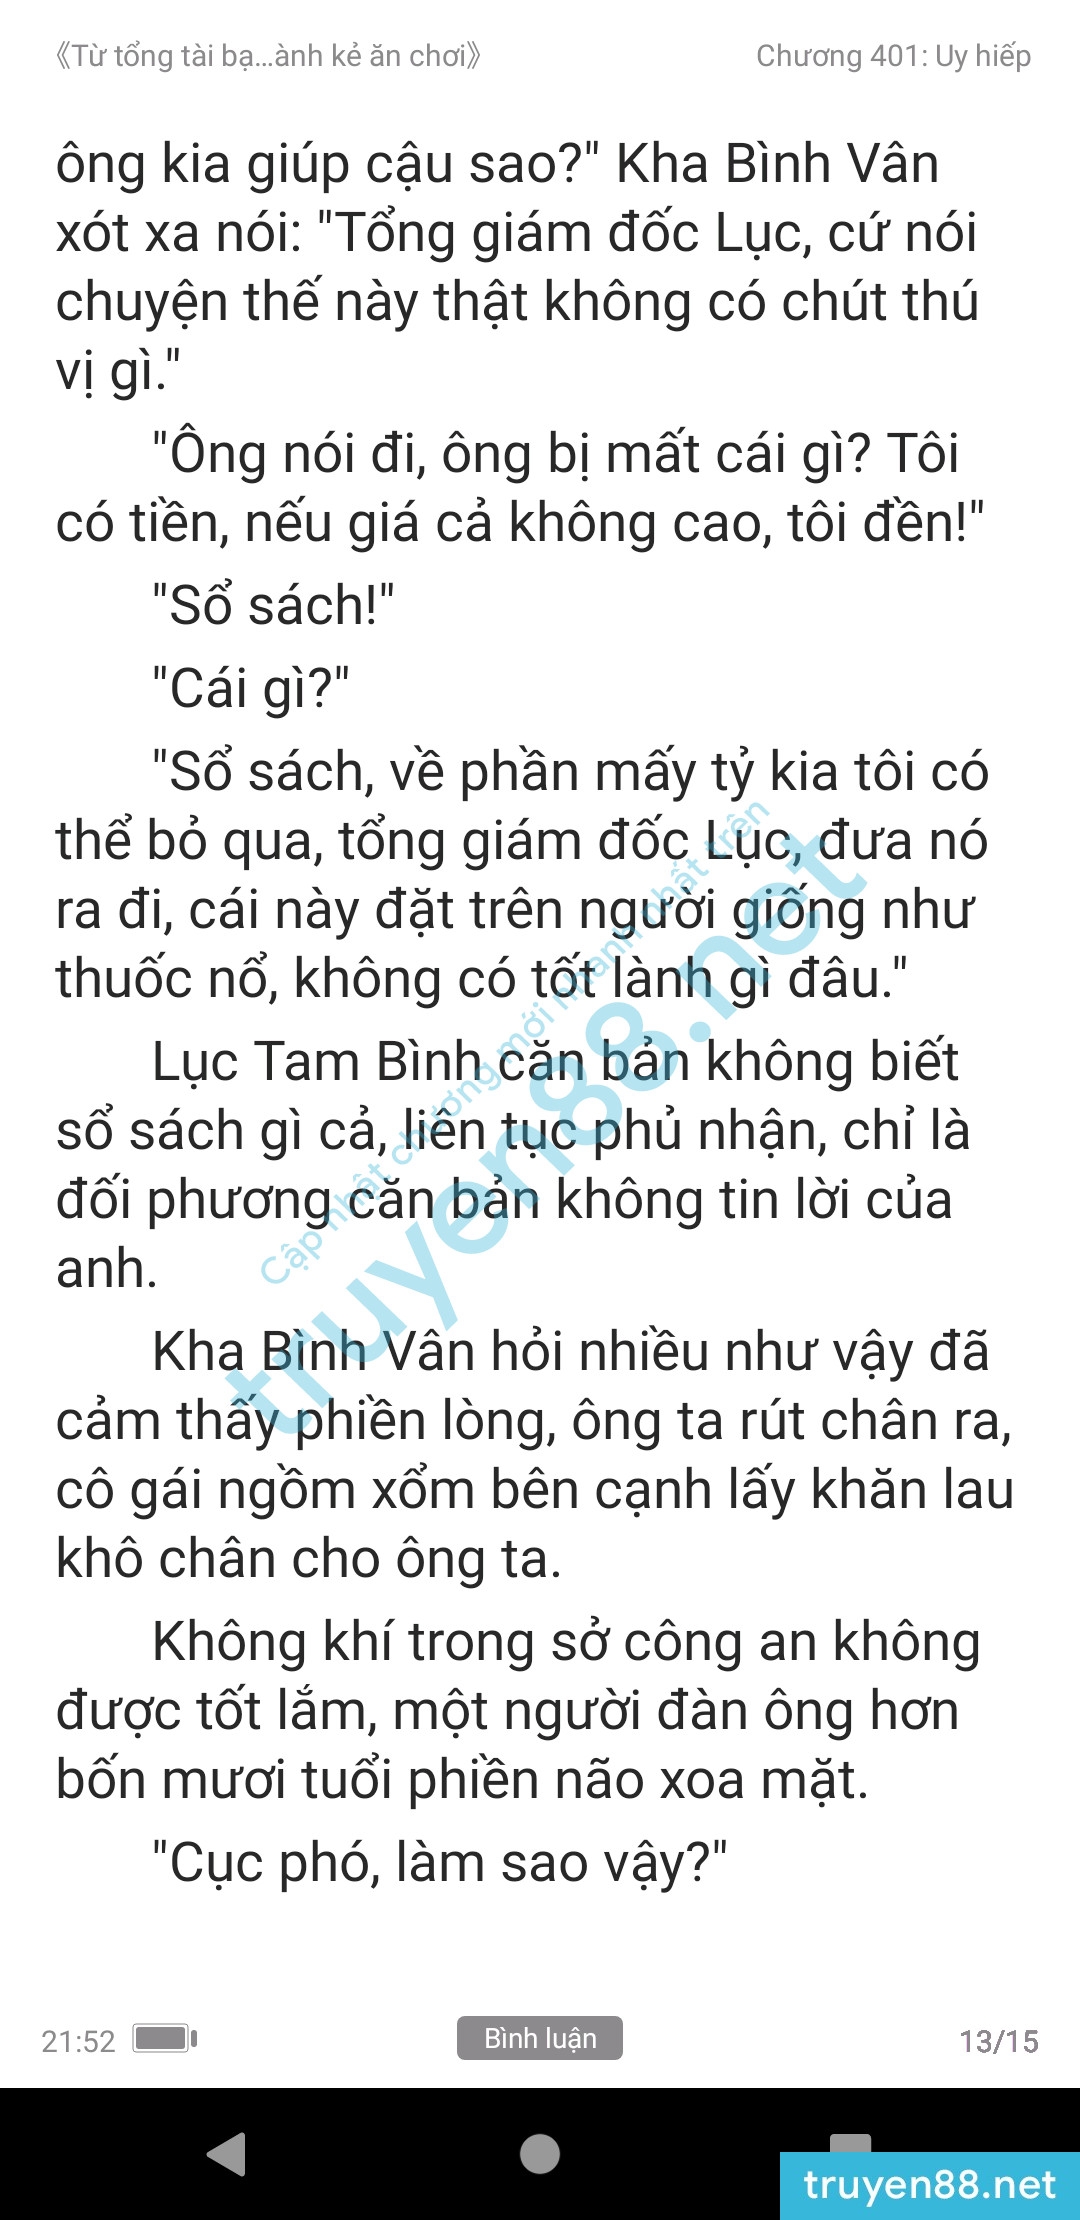 ke-an-choi-bien-tong-tai-401-0